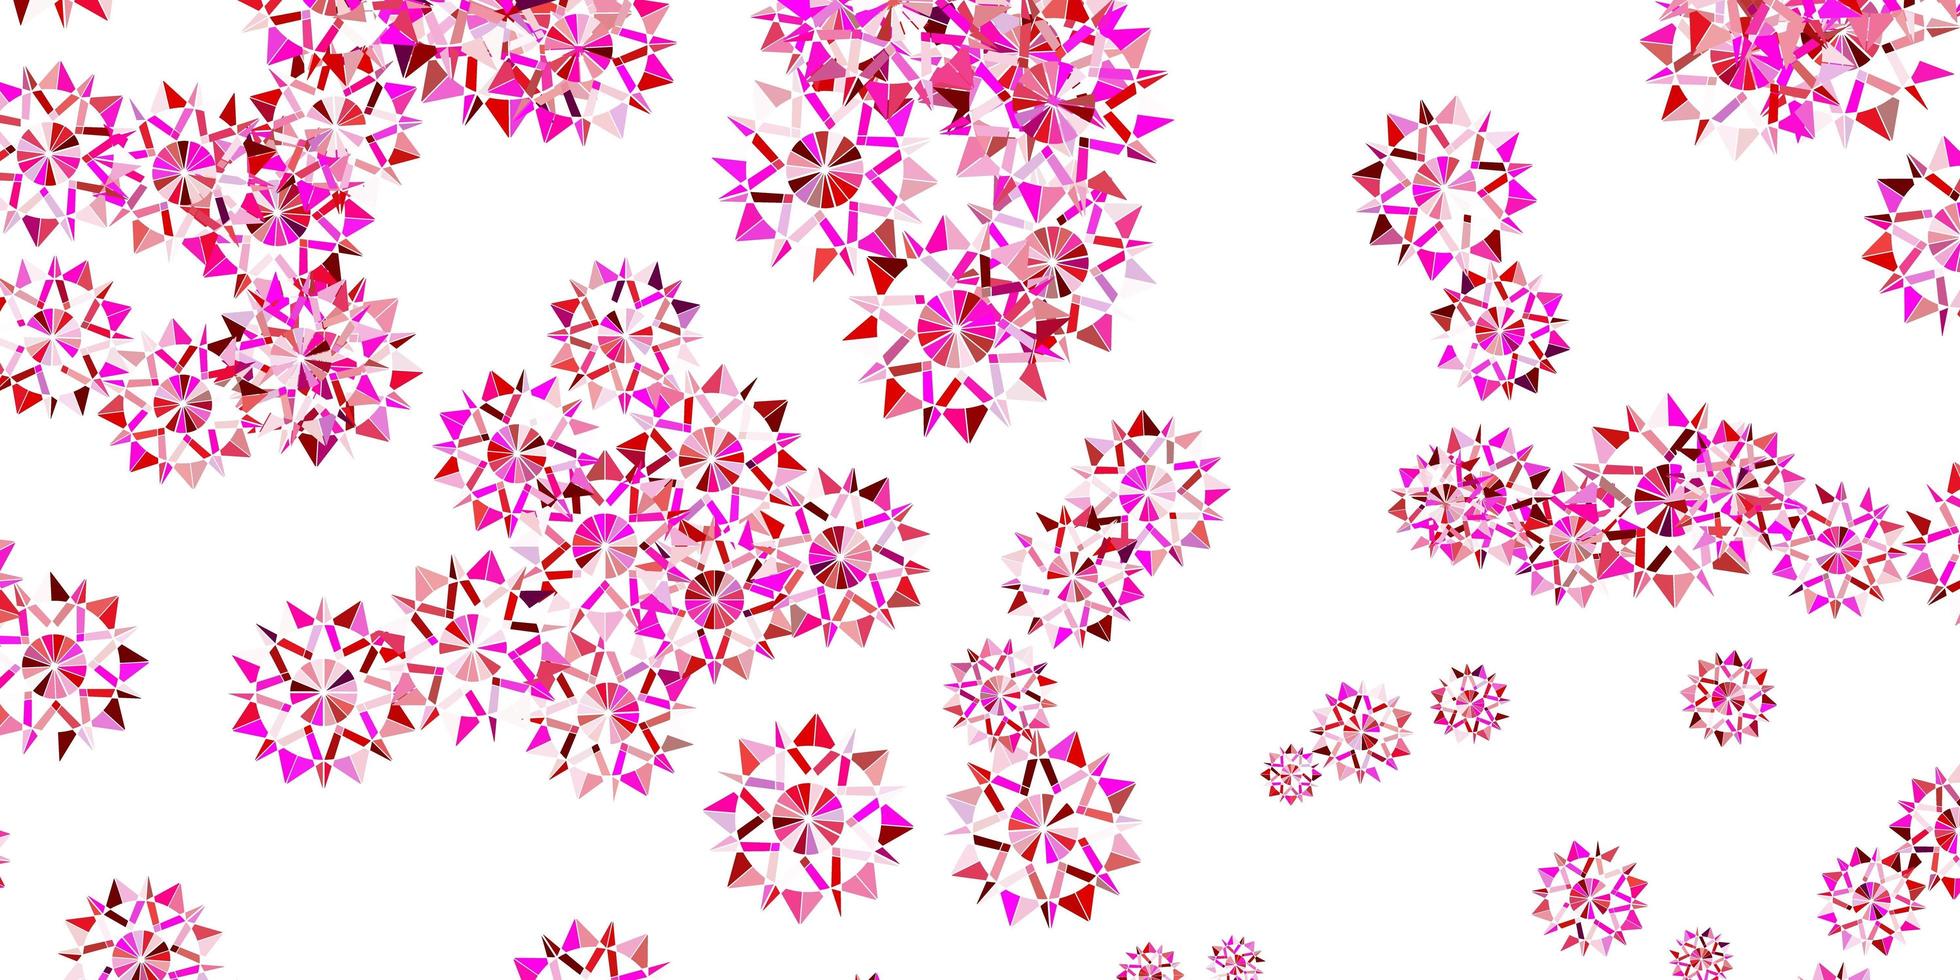 layout roxo claro e rosa com lindos flocos de neve. vetor